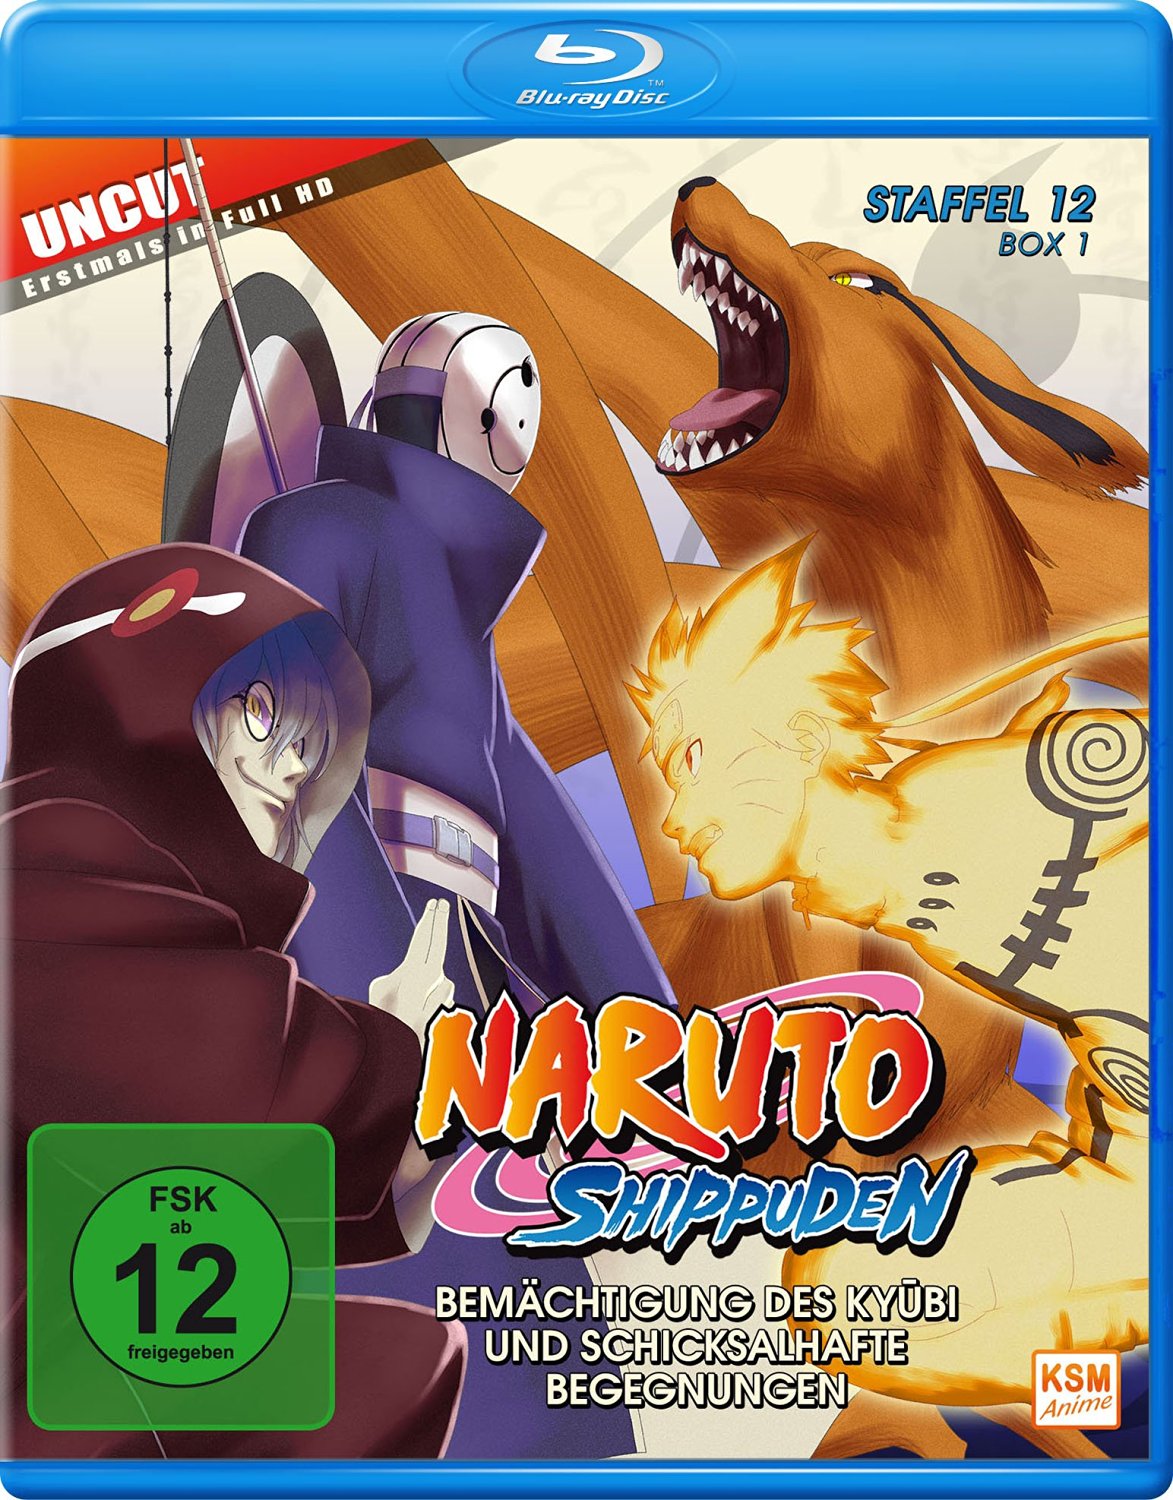 Naruto Shippuden - Staffel 12 Box 1: Episode 463-480 (uncut) Blu-ray